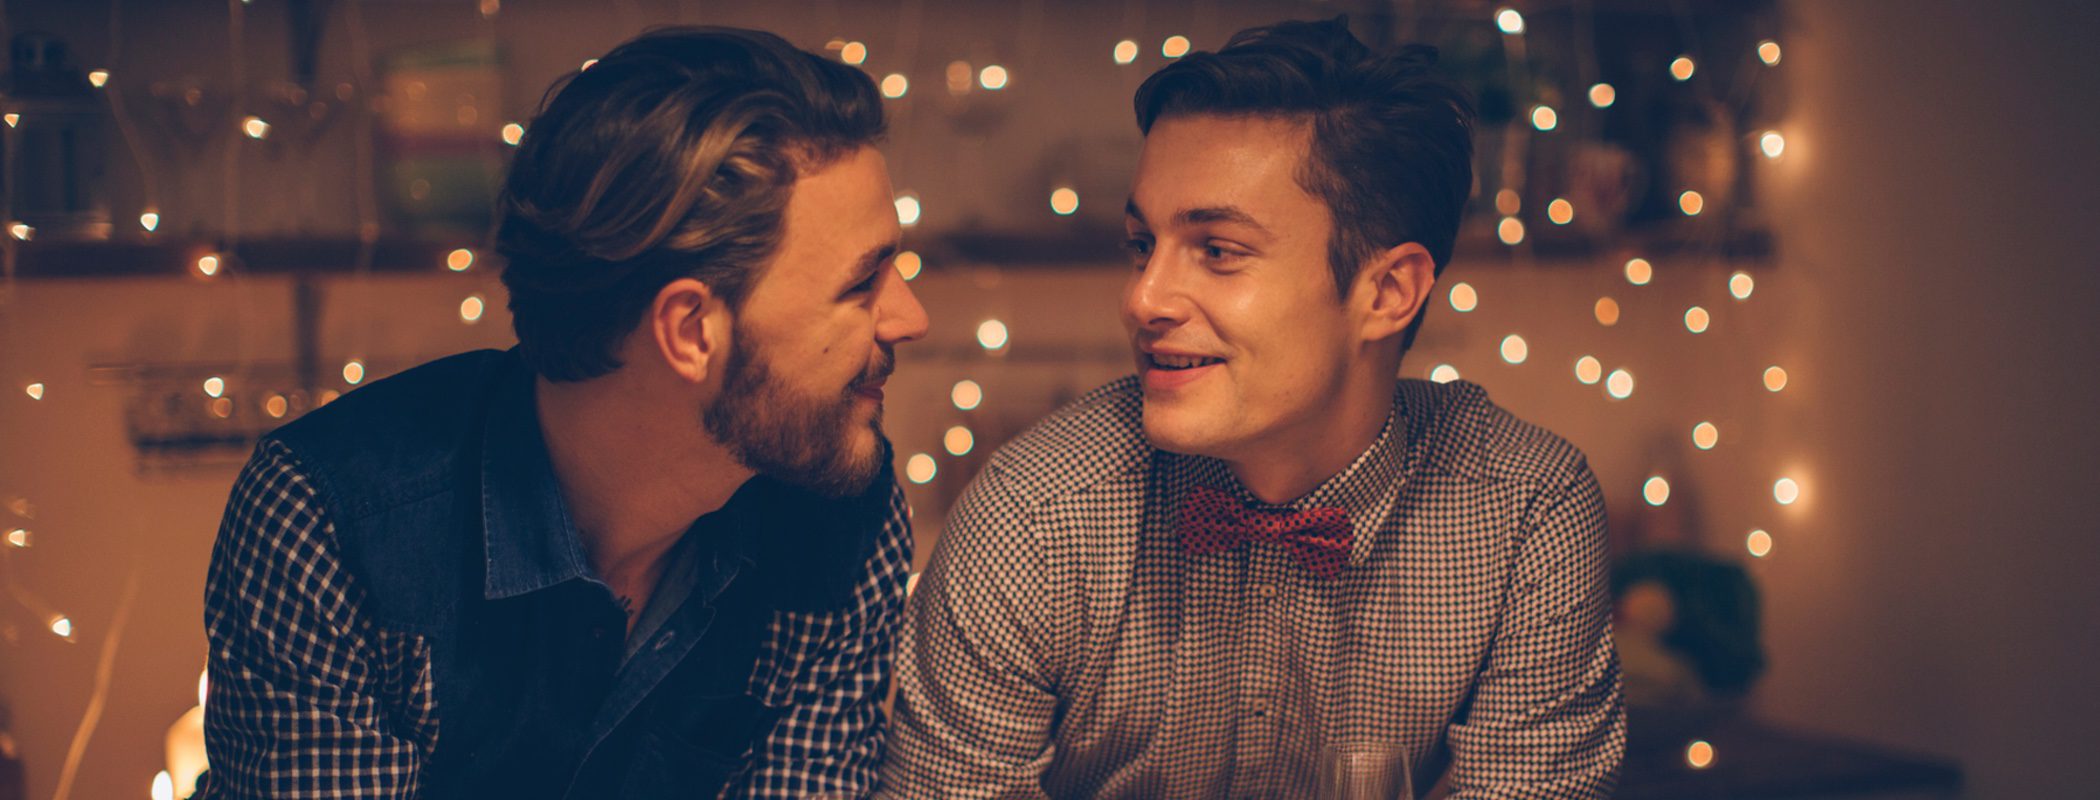 Cómo hacer entender a un homófobo que no es malo ser homosexual